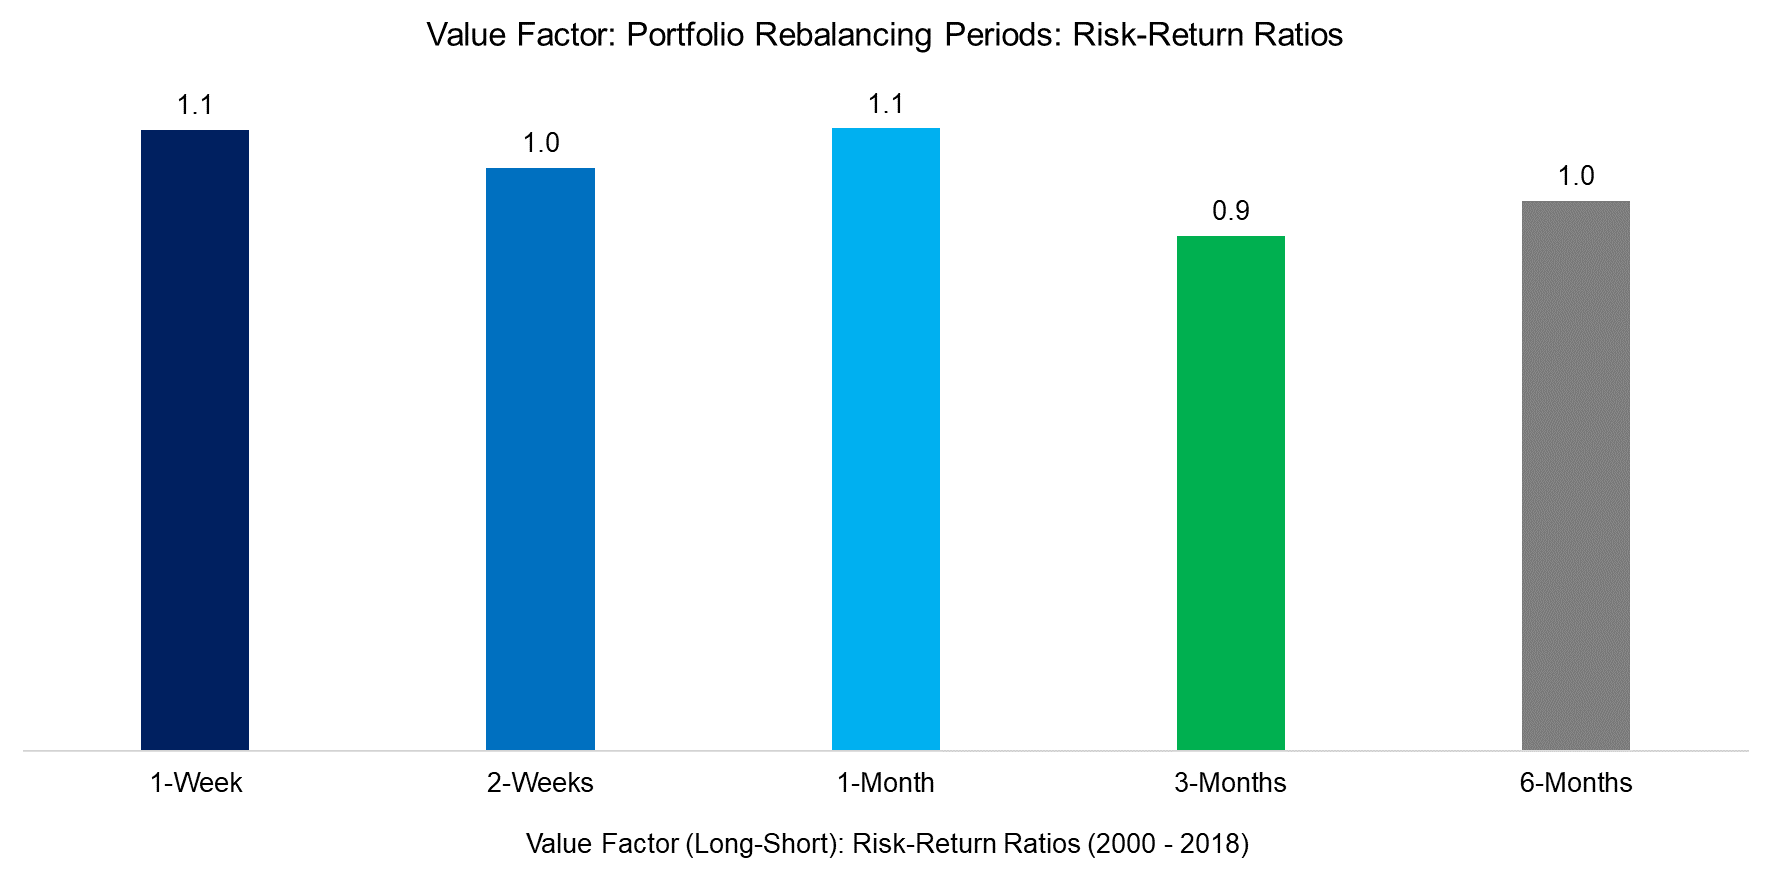 Value Factor Portfolio Rebalancing Periods Risk-Return Ratios